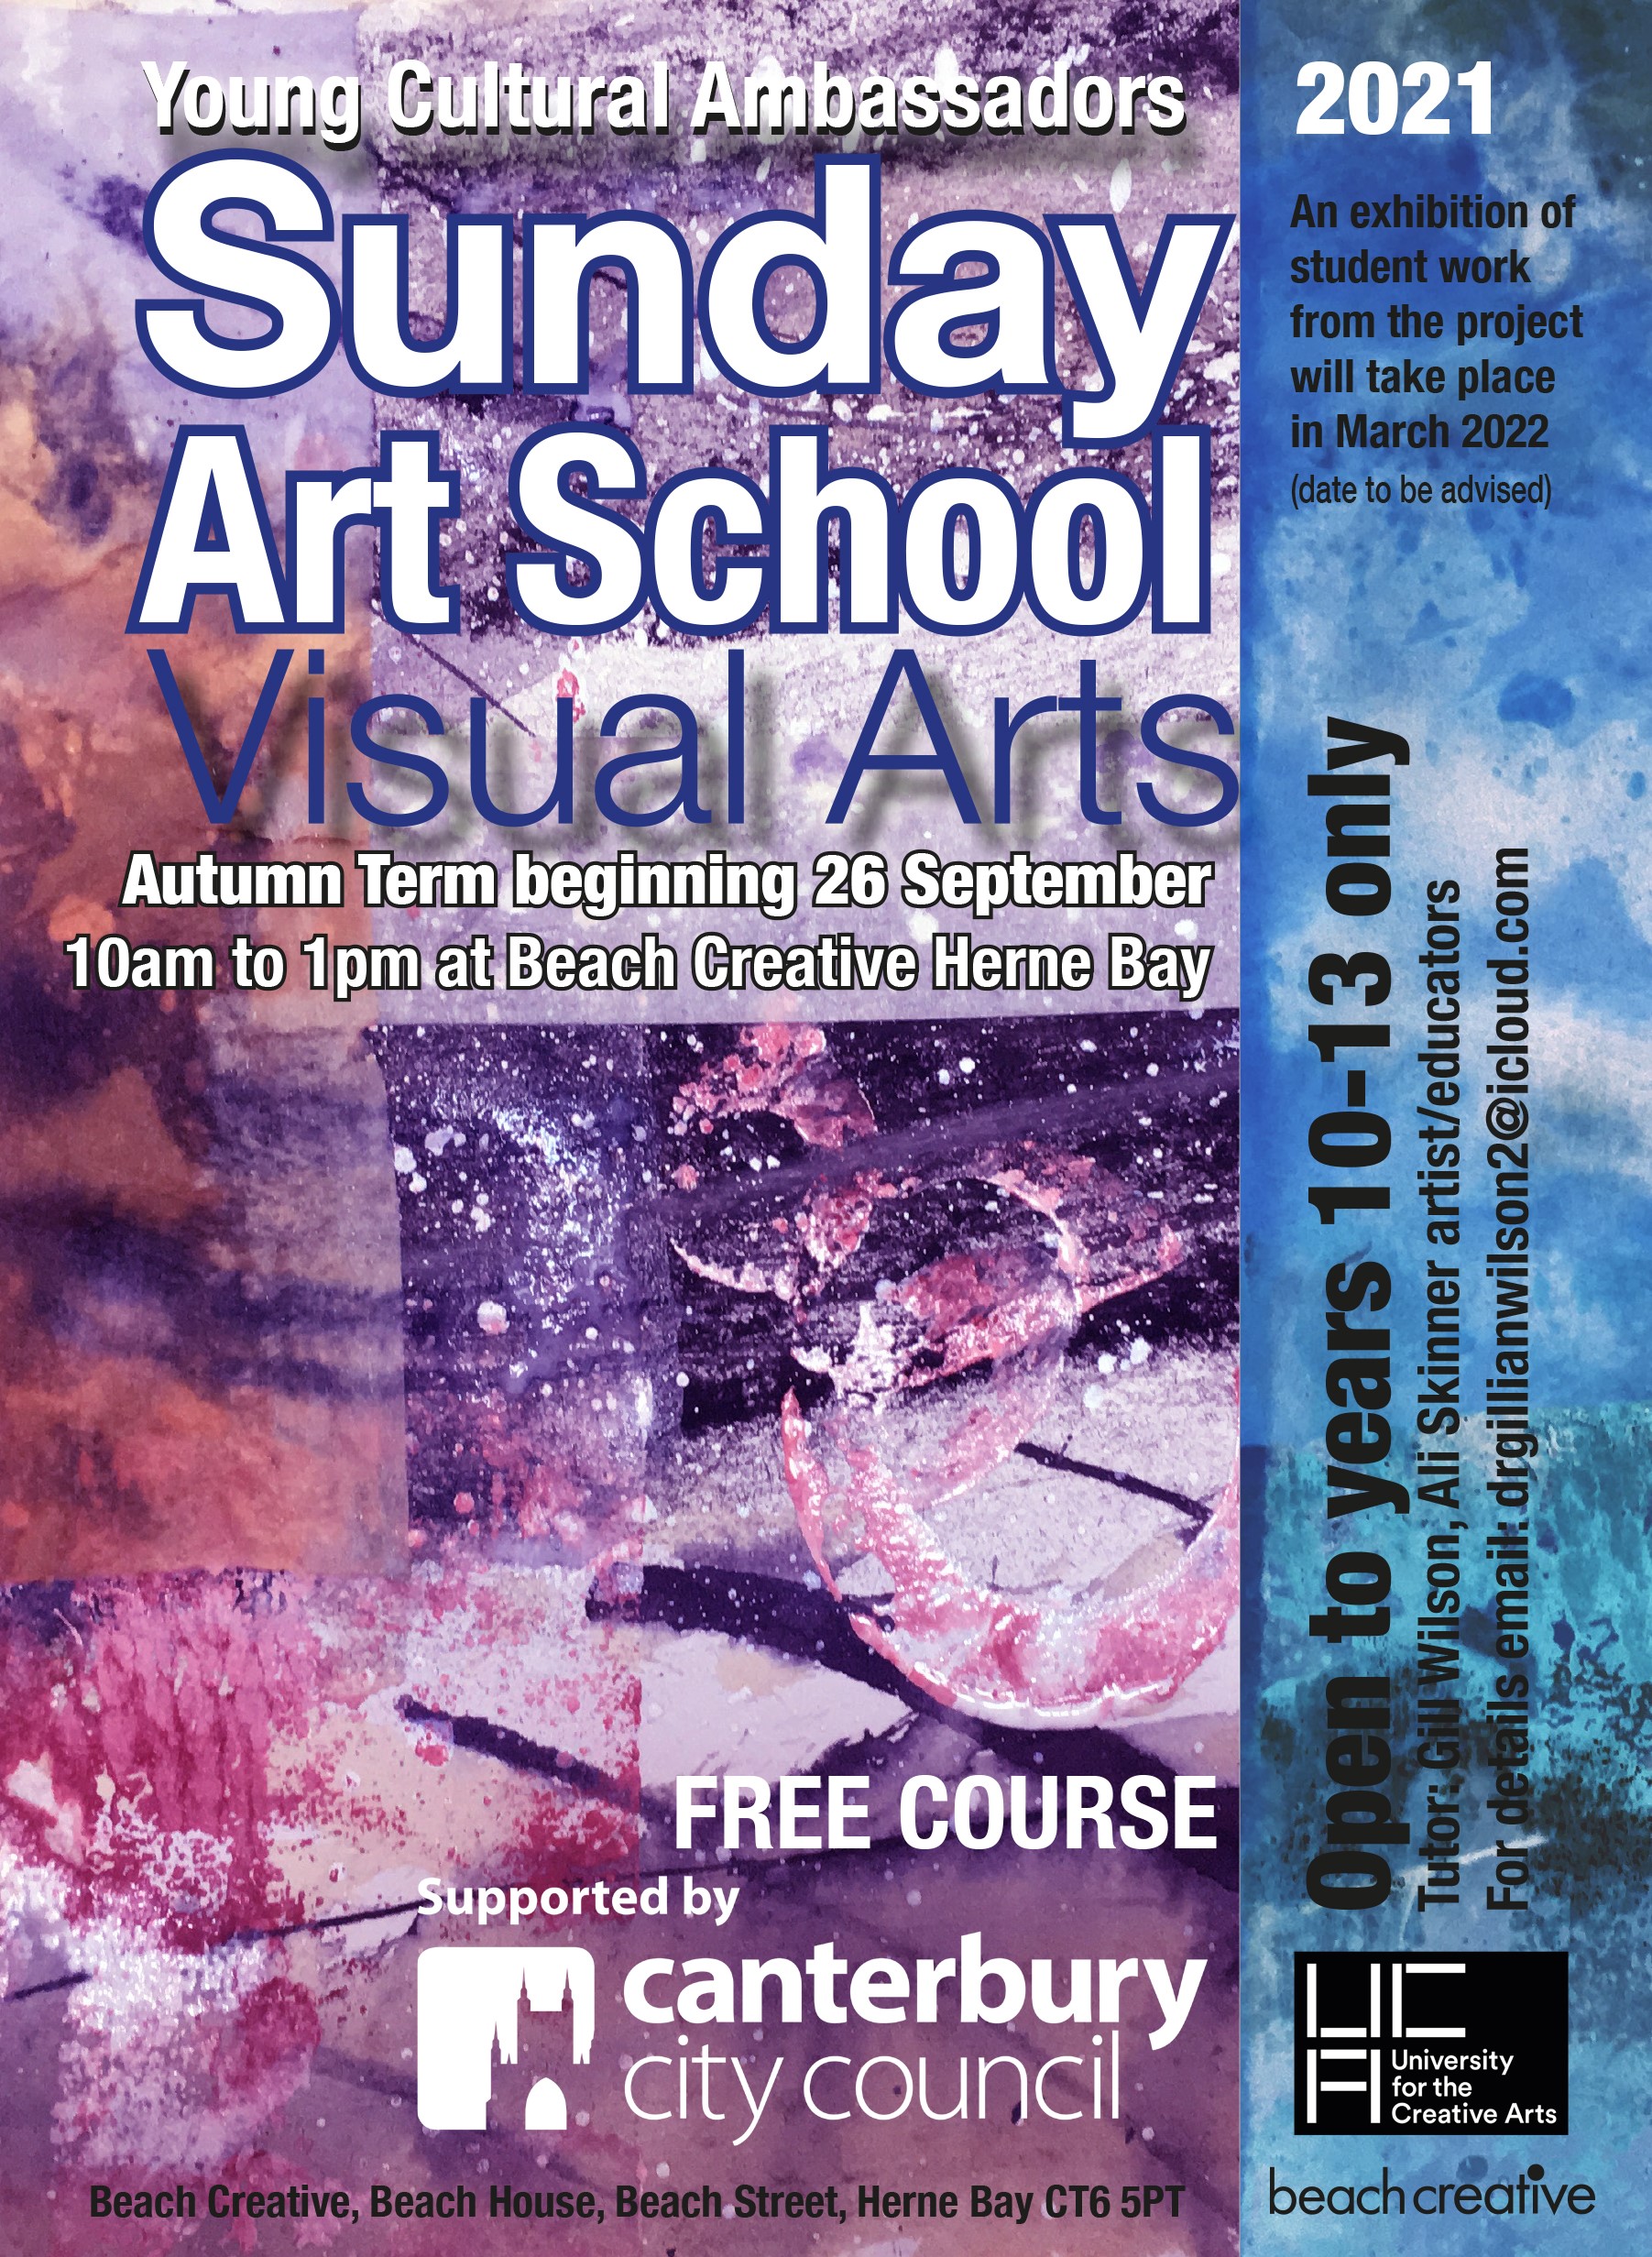 Young Cultural Ambassadors Sunday Art School